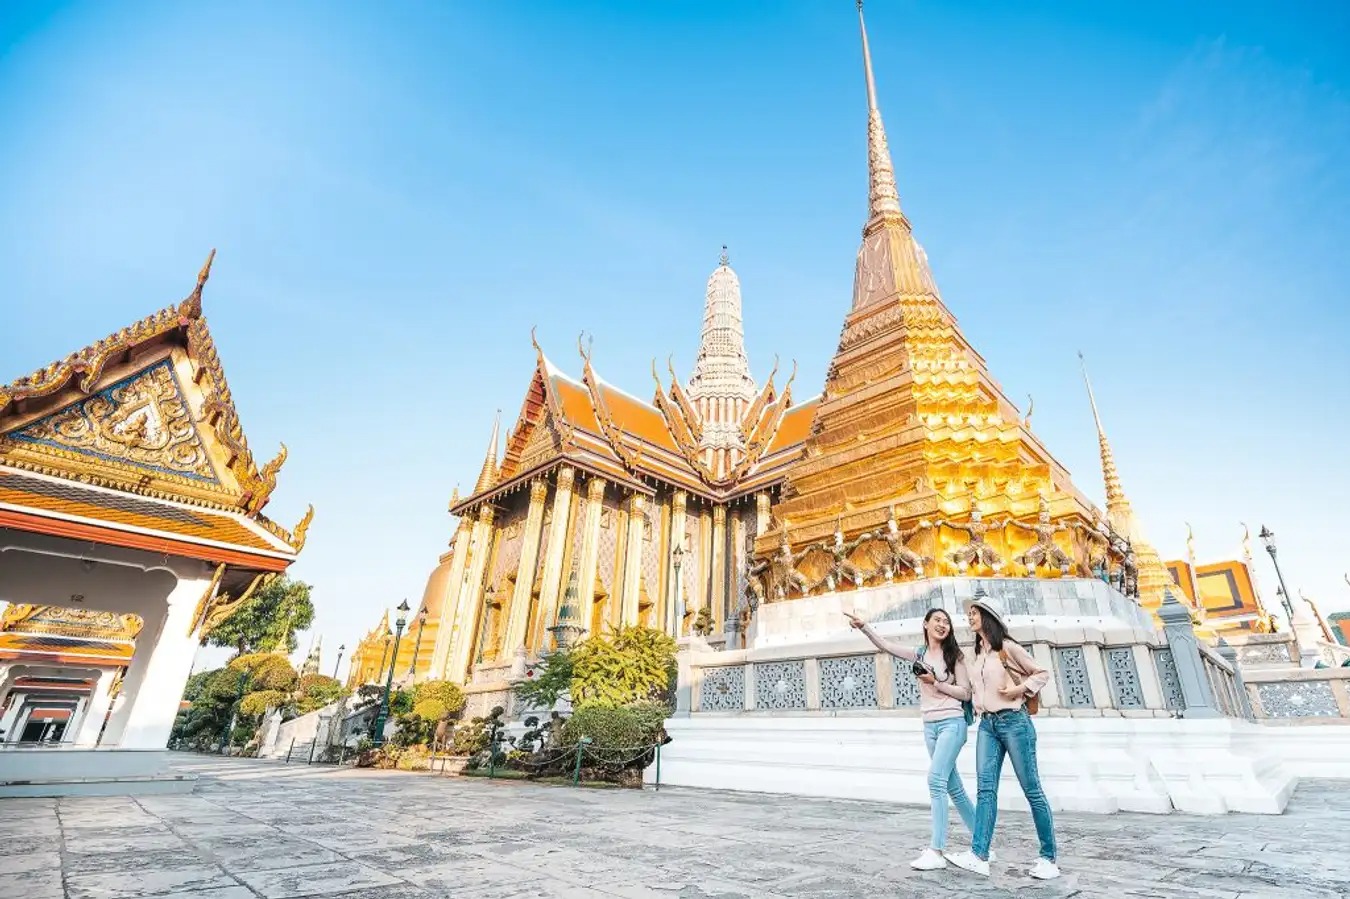 Cẩm nang du lịch Thái Lan: Để có kì nghỉ thật tuyệt vời tại xứ sở Chùa Tháp, hãy tham khảo ngay Cẩm nang du lịch Thái Lan. Bạn sẽ tìm thấy những điểm đến độc đáo, những món ăn ngon và những lời khuyên hữu ích để trải nghiệm chuyến du lịch của mình một cách tối ưu.